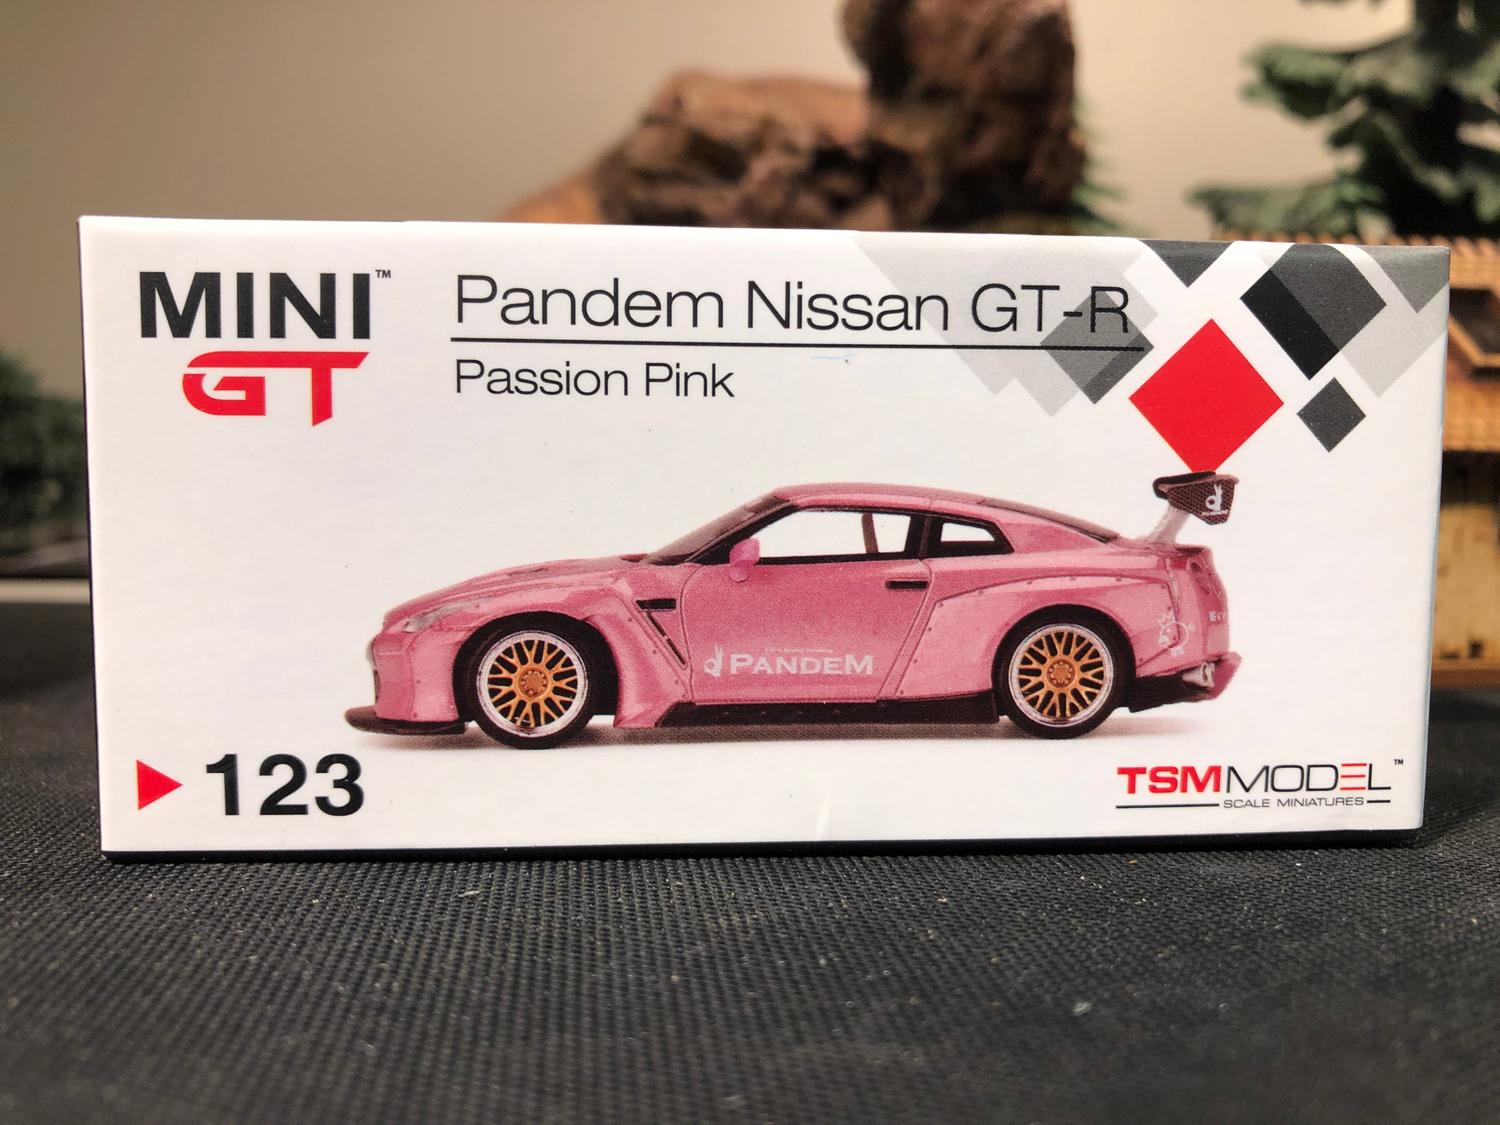 Skala 1/64 Otroligt fin Pandem Nissan GT - Passion Pink - från MINI GT